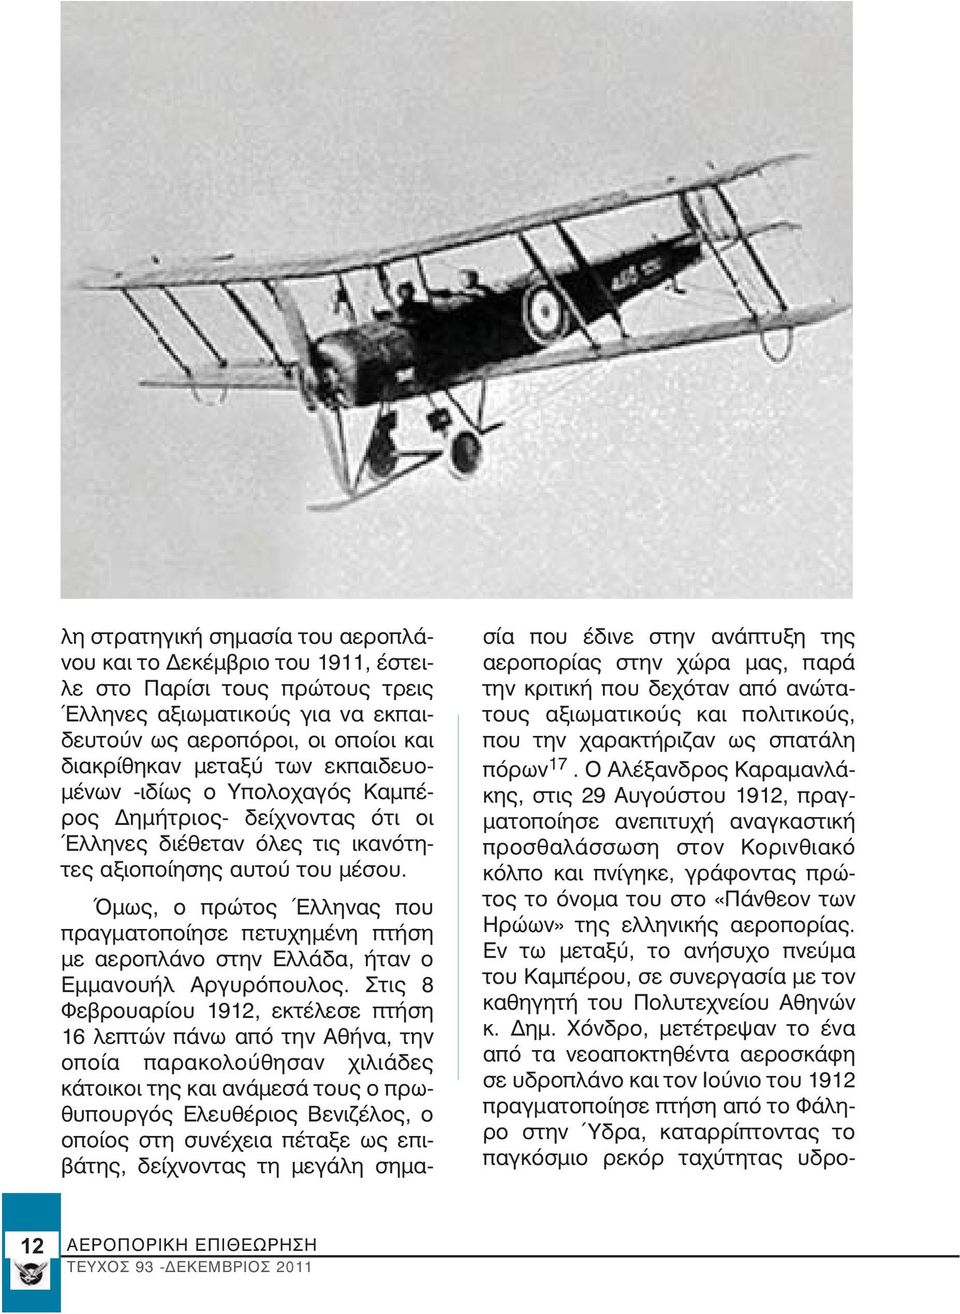 Όμως, ο πρώτος Έλληνας που πραγματοποίησε πετυχημένη πτήση με αεροπλάνο στην Ελλάδα, ήταν ο Εμμανουήλ Αργυρόπουλος.